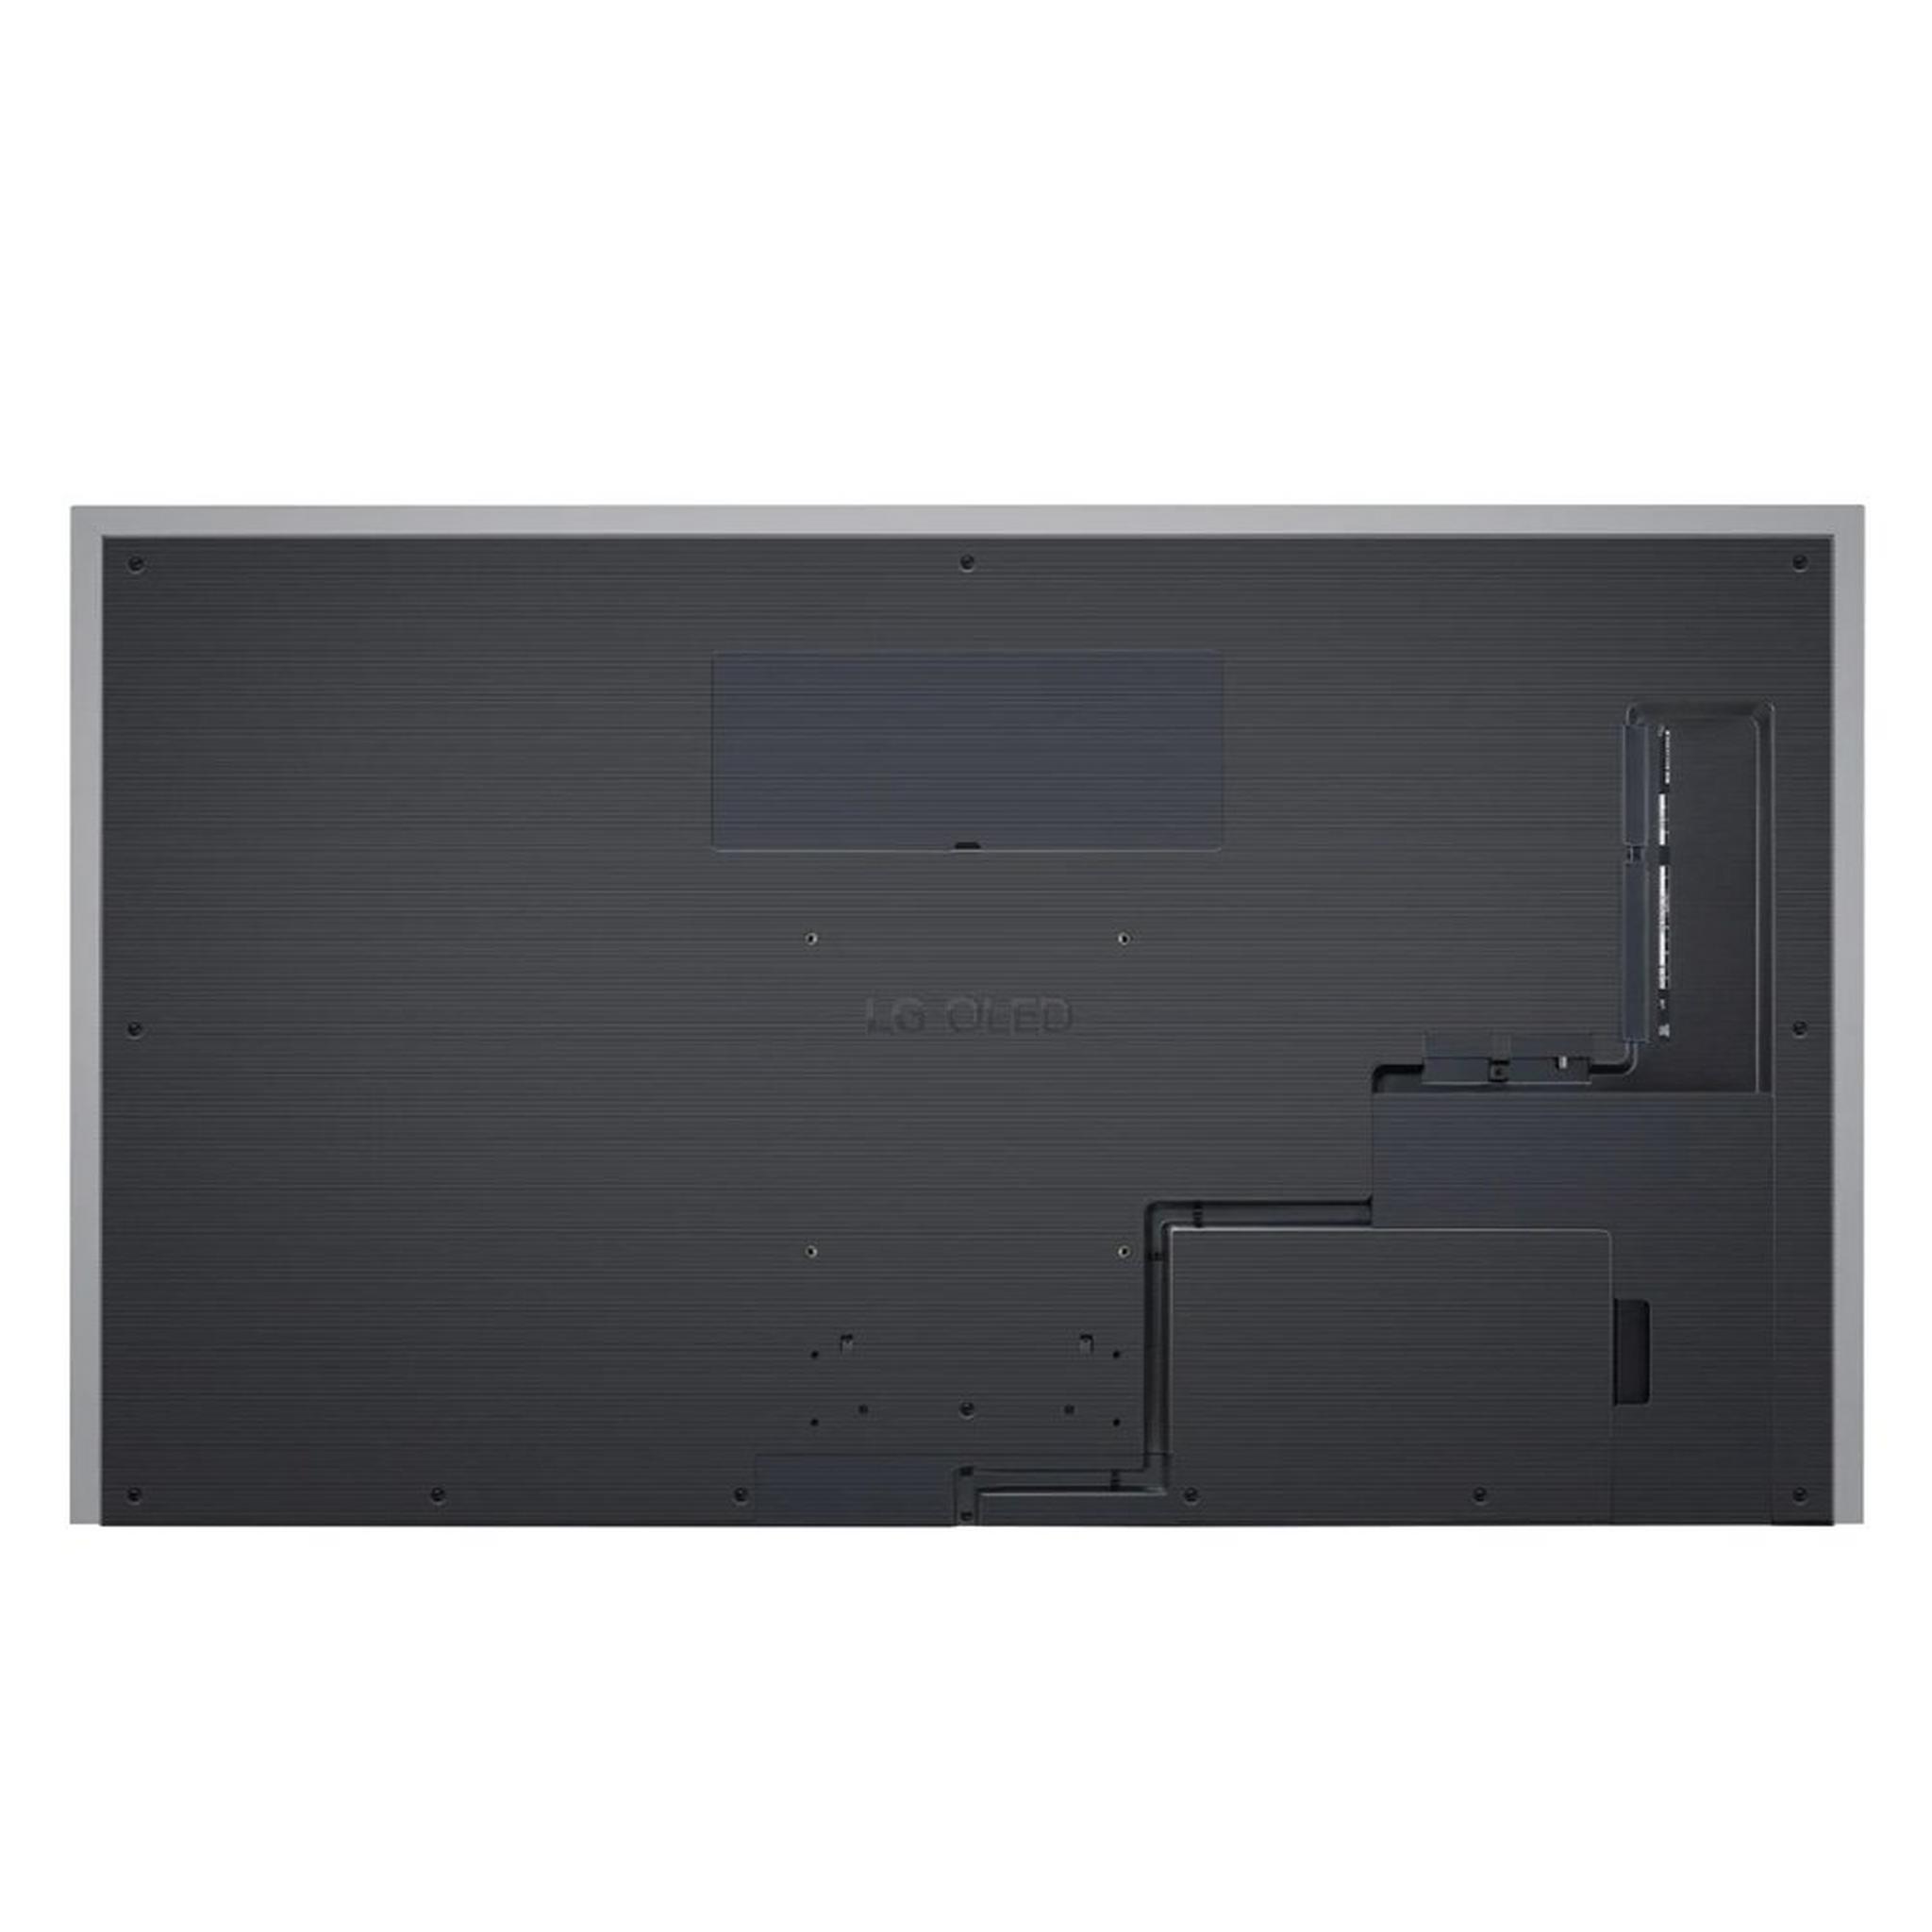 LG Smart TV G2 Series OLED 83 Inch 4K 120Hz (OLED83G2)